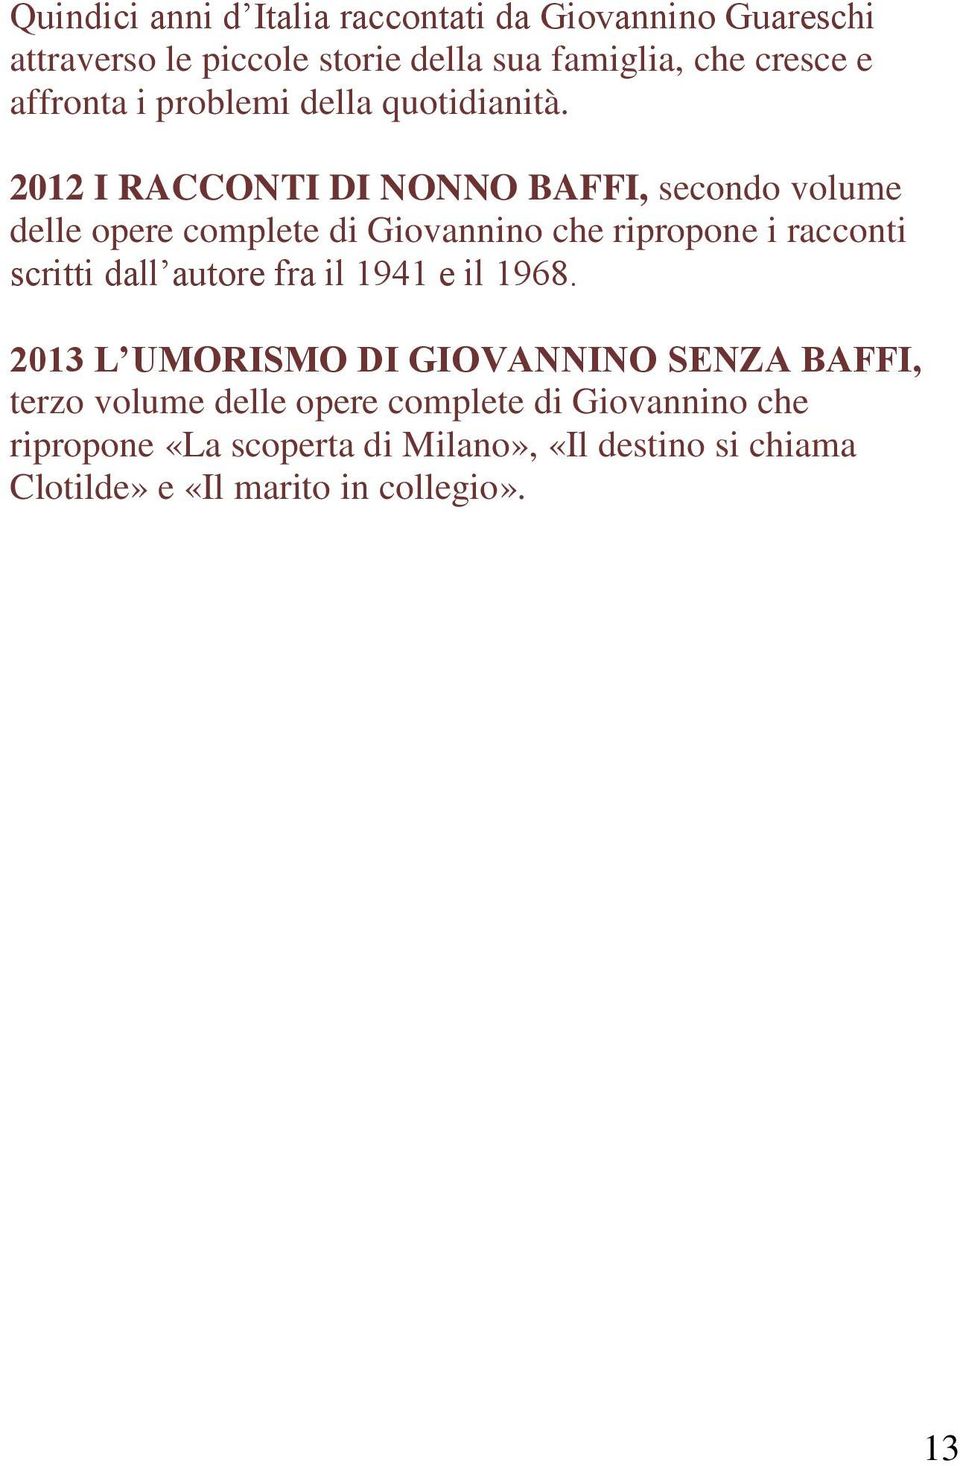 2012 I RACCONTI DI NONNO BAFFI, secondo volume delle opere complete di Giovannino che ripropone i racconti scritti dall